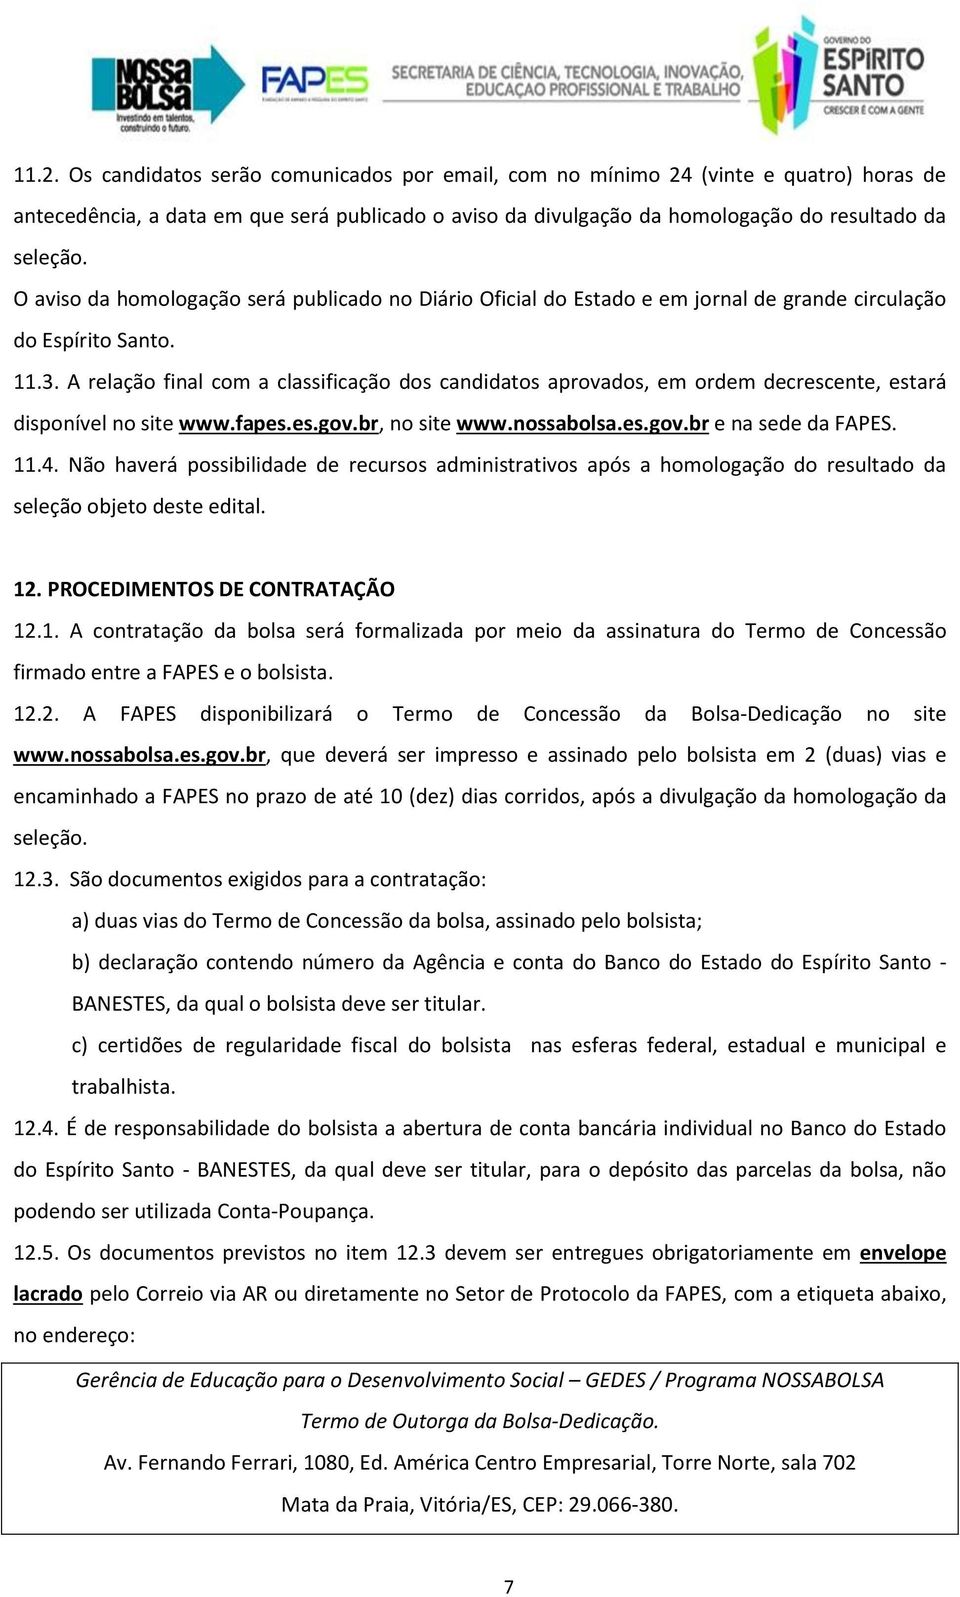 A relação final com a classificação dos candidatos aprovados, em ordem decrescente, estará disponível no site www.fapes.es.gov.br, no site www.nossabolsa.es.gov.br e na sede da FAPES. 11.4.